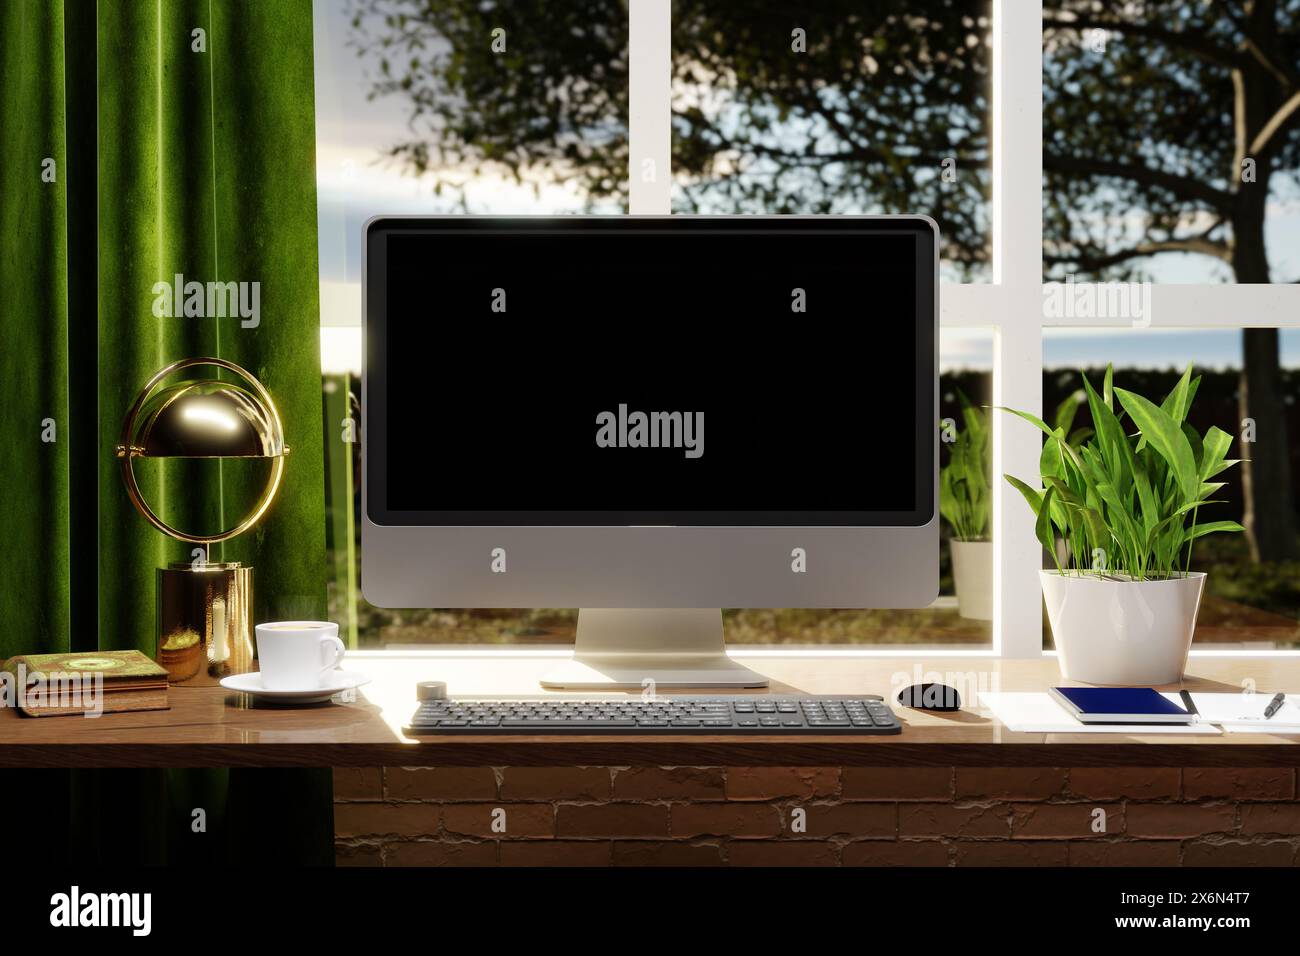 Concept de lieu de travail : maquette de bureau d'ordinateur à écran blanc avec clavier avec une vue hors de la fenêtre dans un jardin - illustration 3D. Banque D'Images